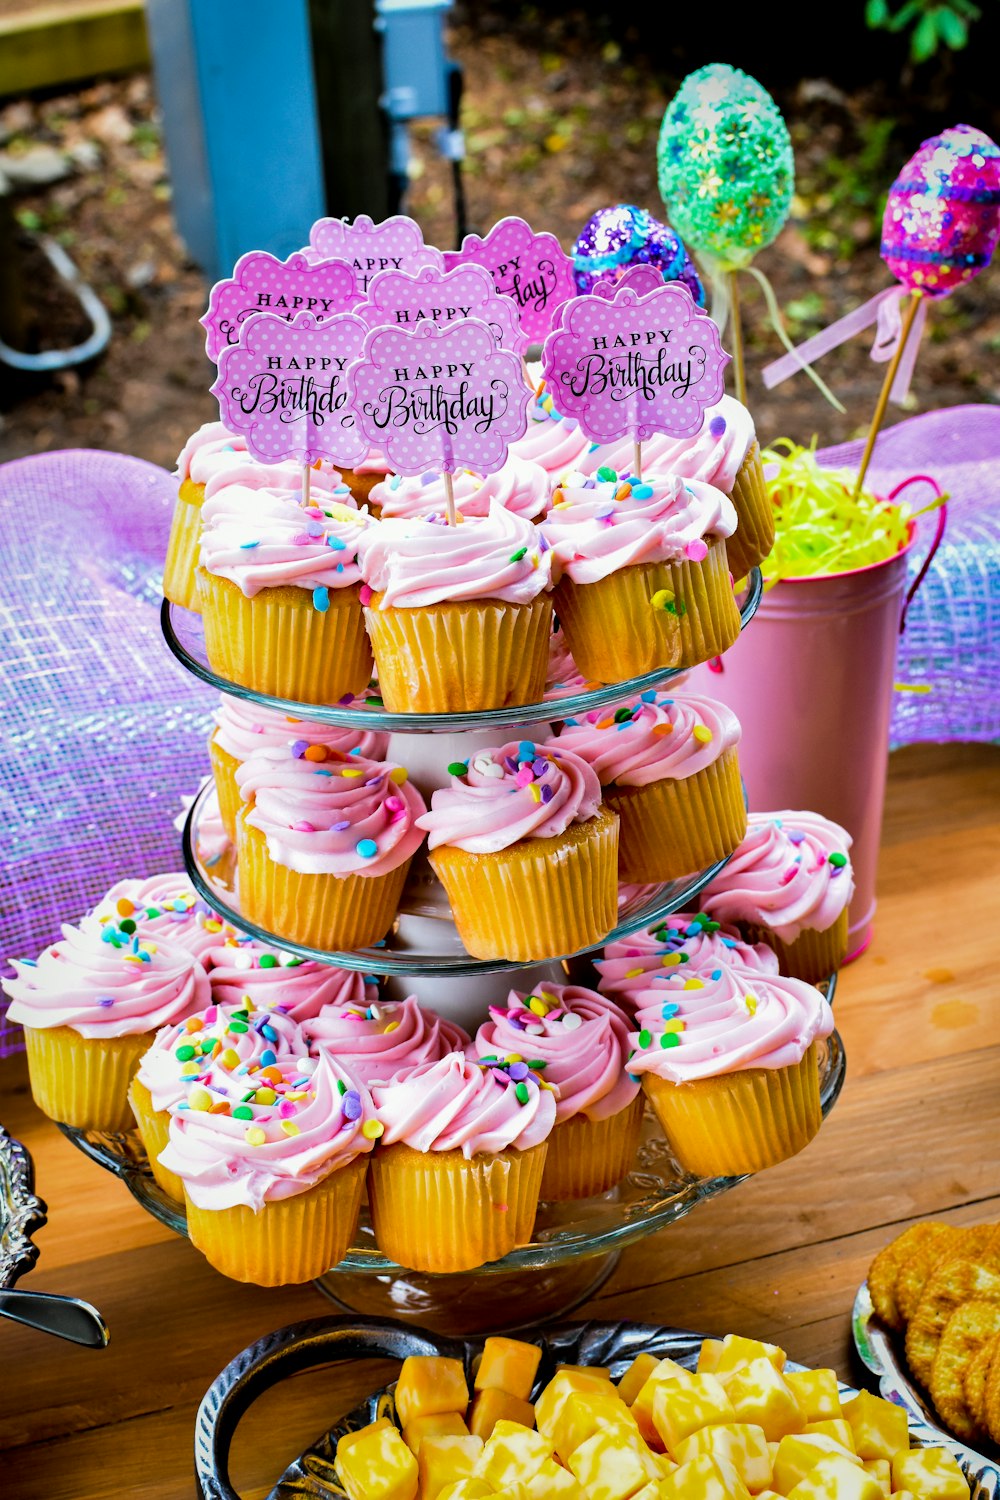 분홍색 설탕 프로스팅으로 덮인 많은 컵 케이크를 얹은 테이블